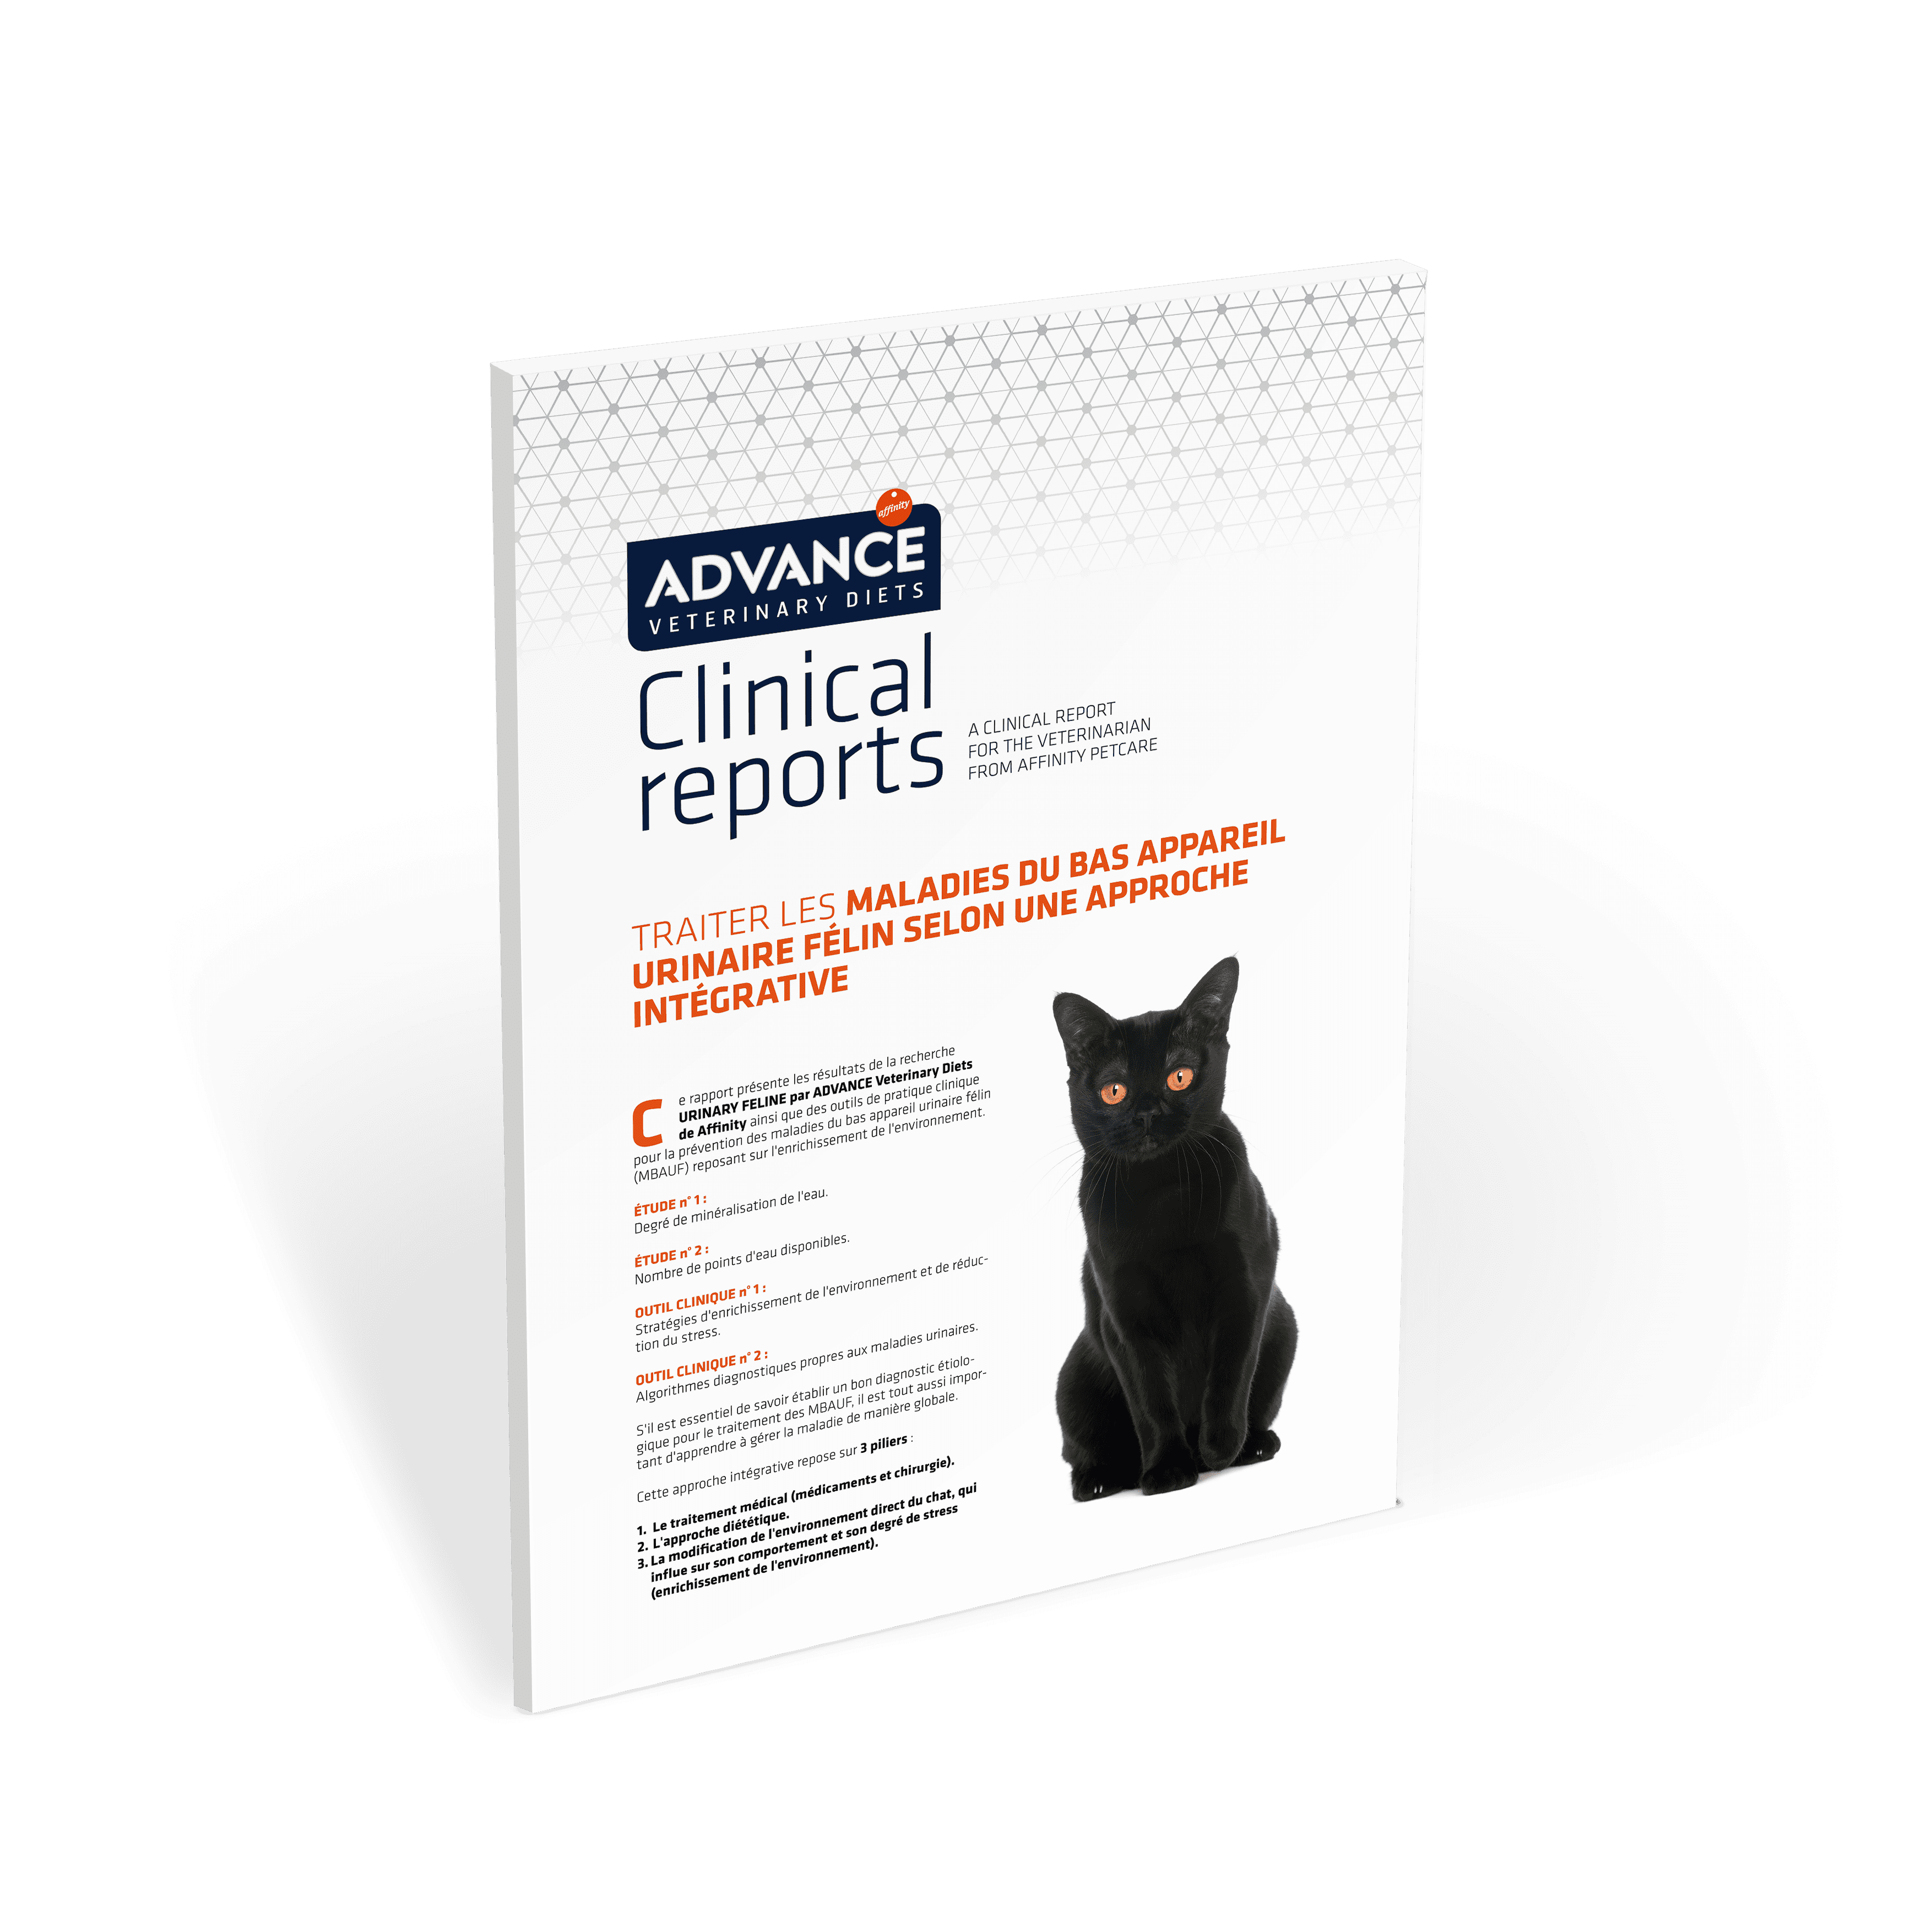 AFF-FR Urinary feline